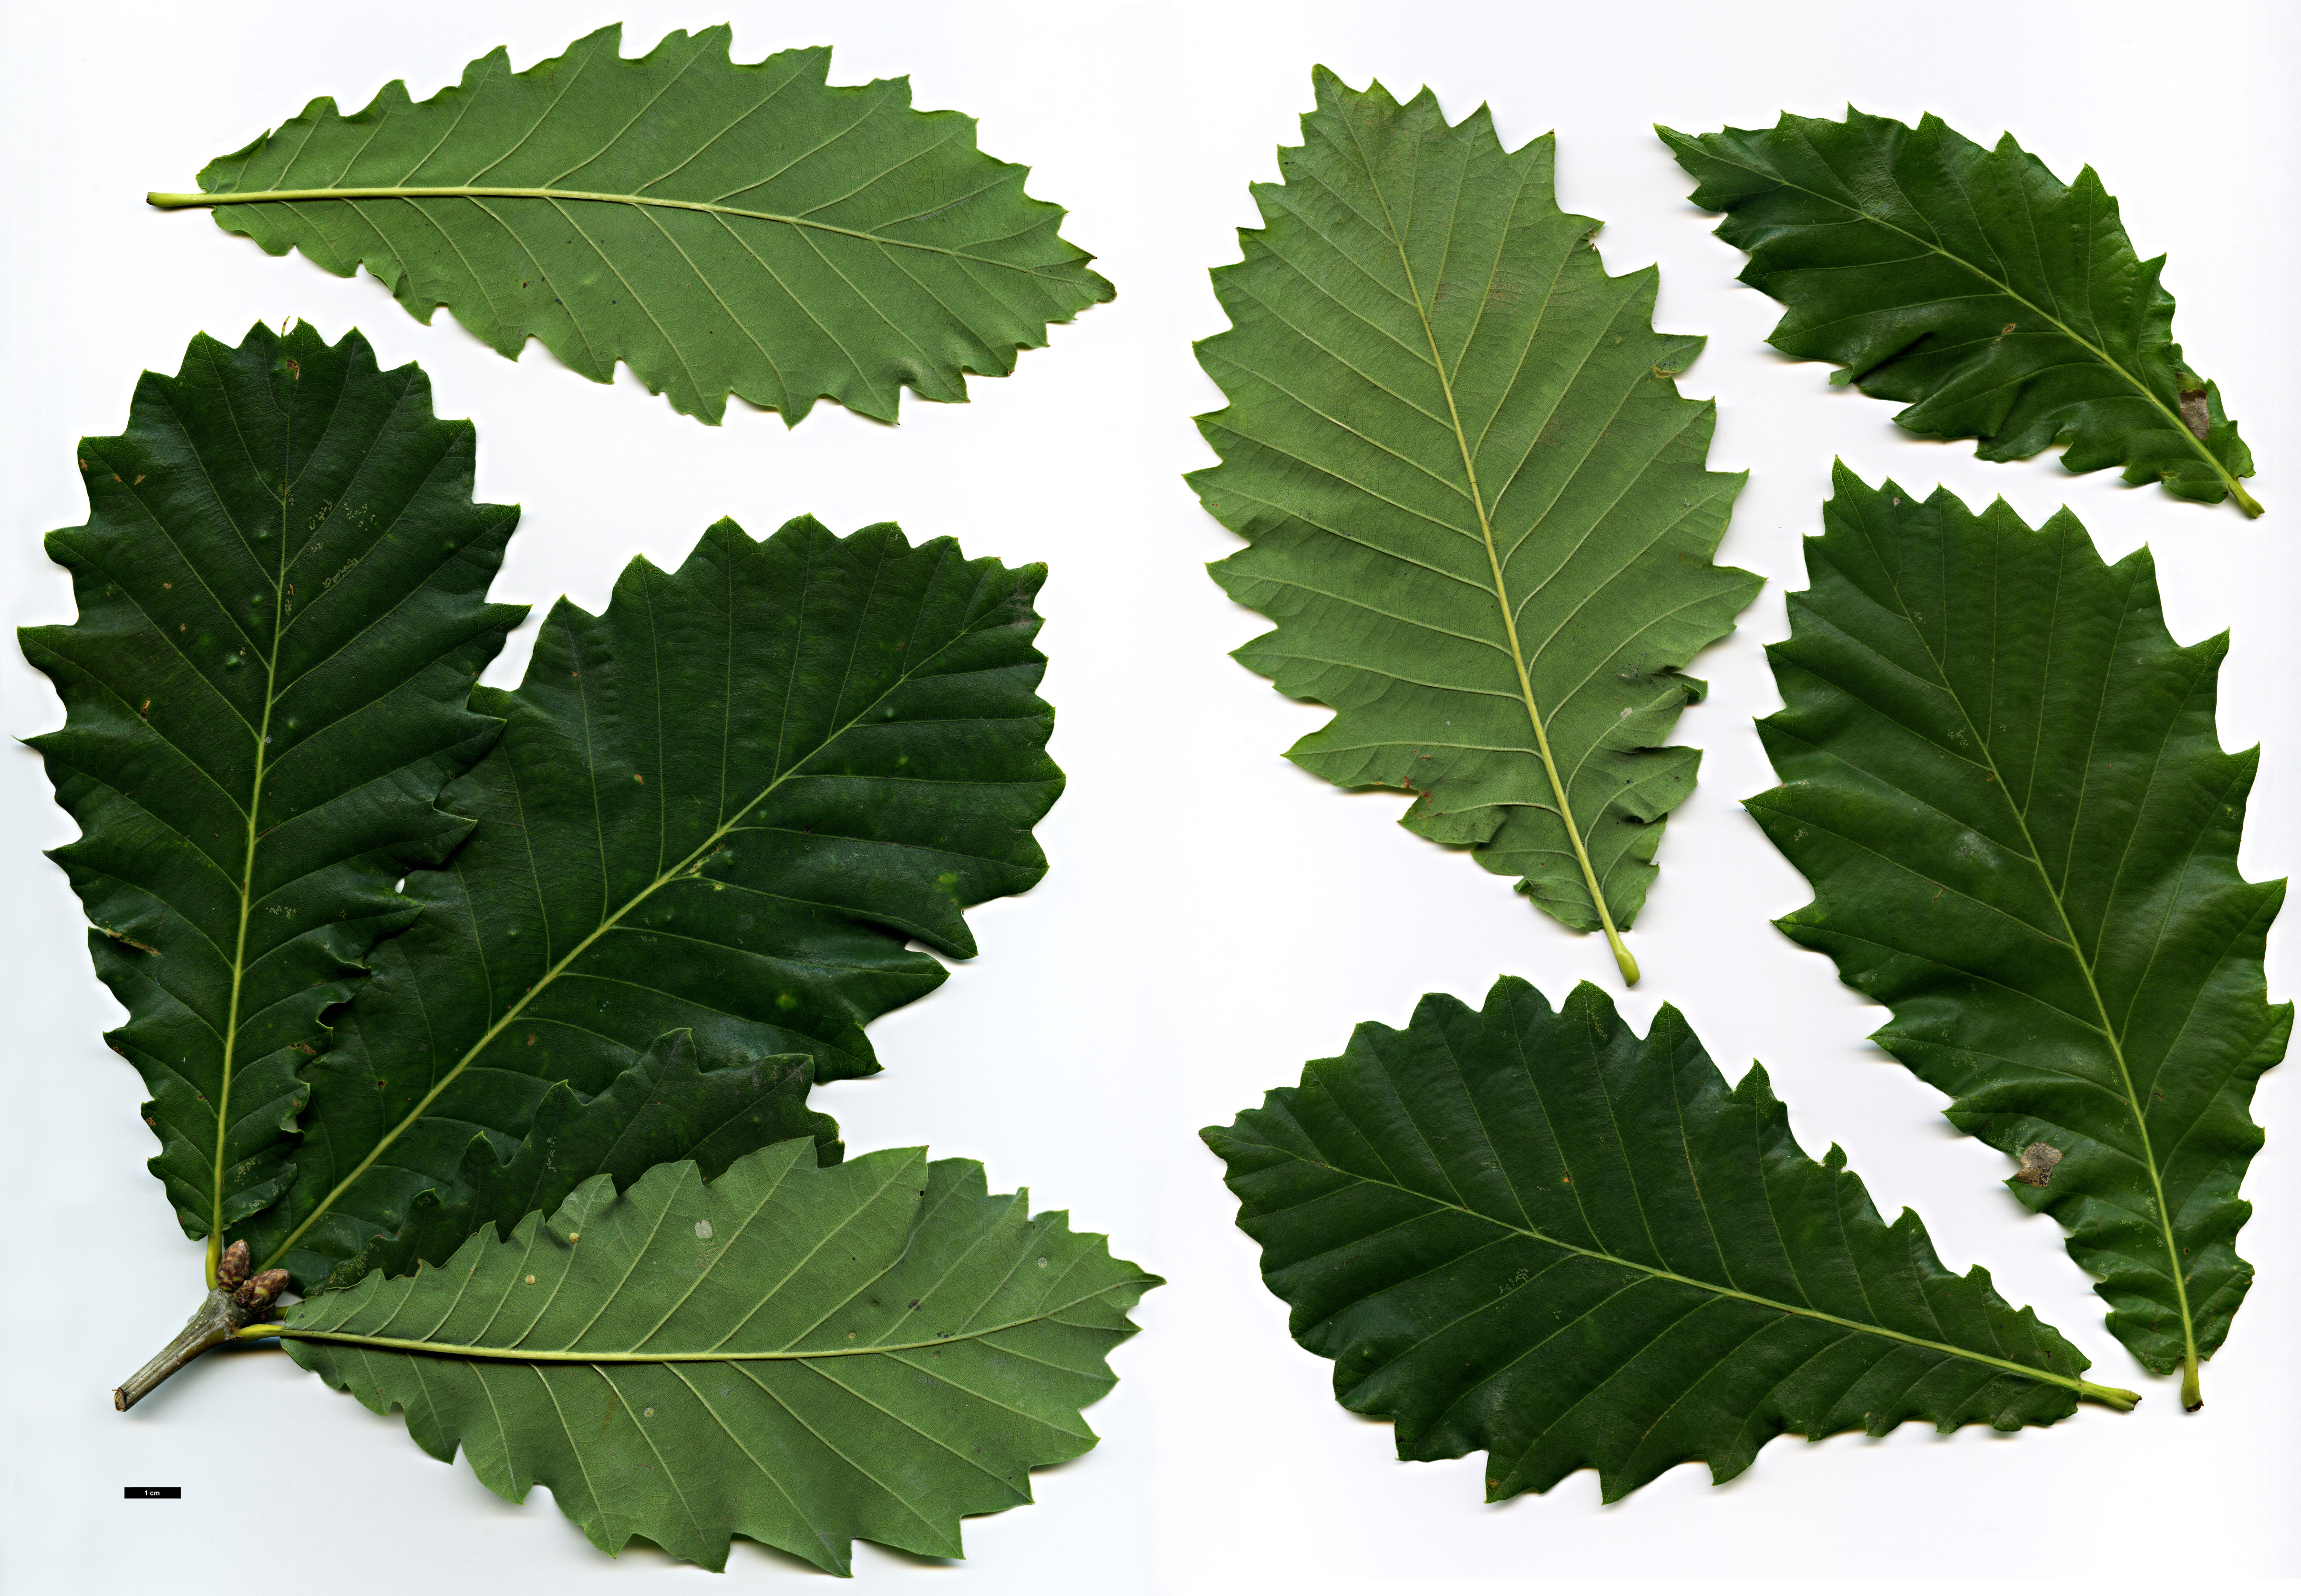 High resolution image: Family: Fagaceae - Genus: Quercus - Taxon: ×hickelii (Q.pontica × Q.robur)